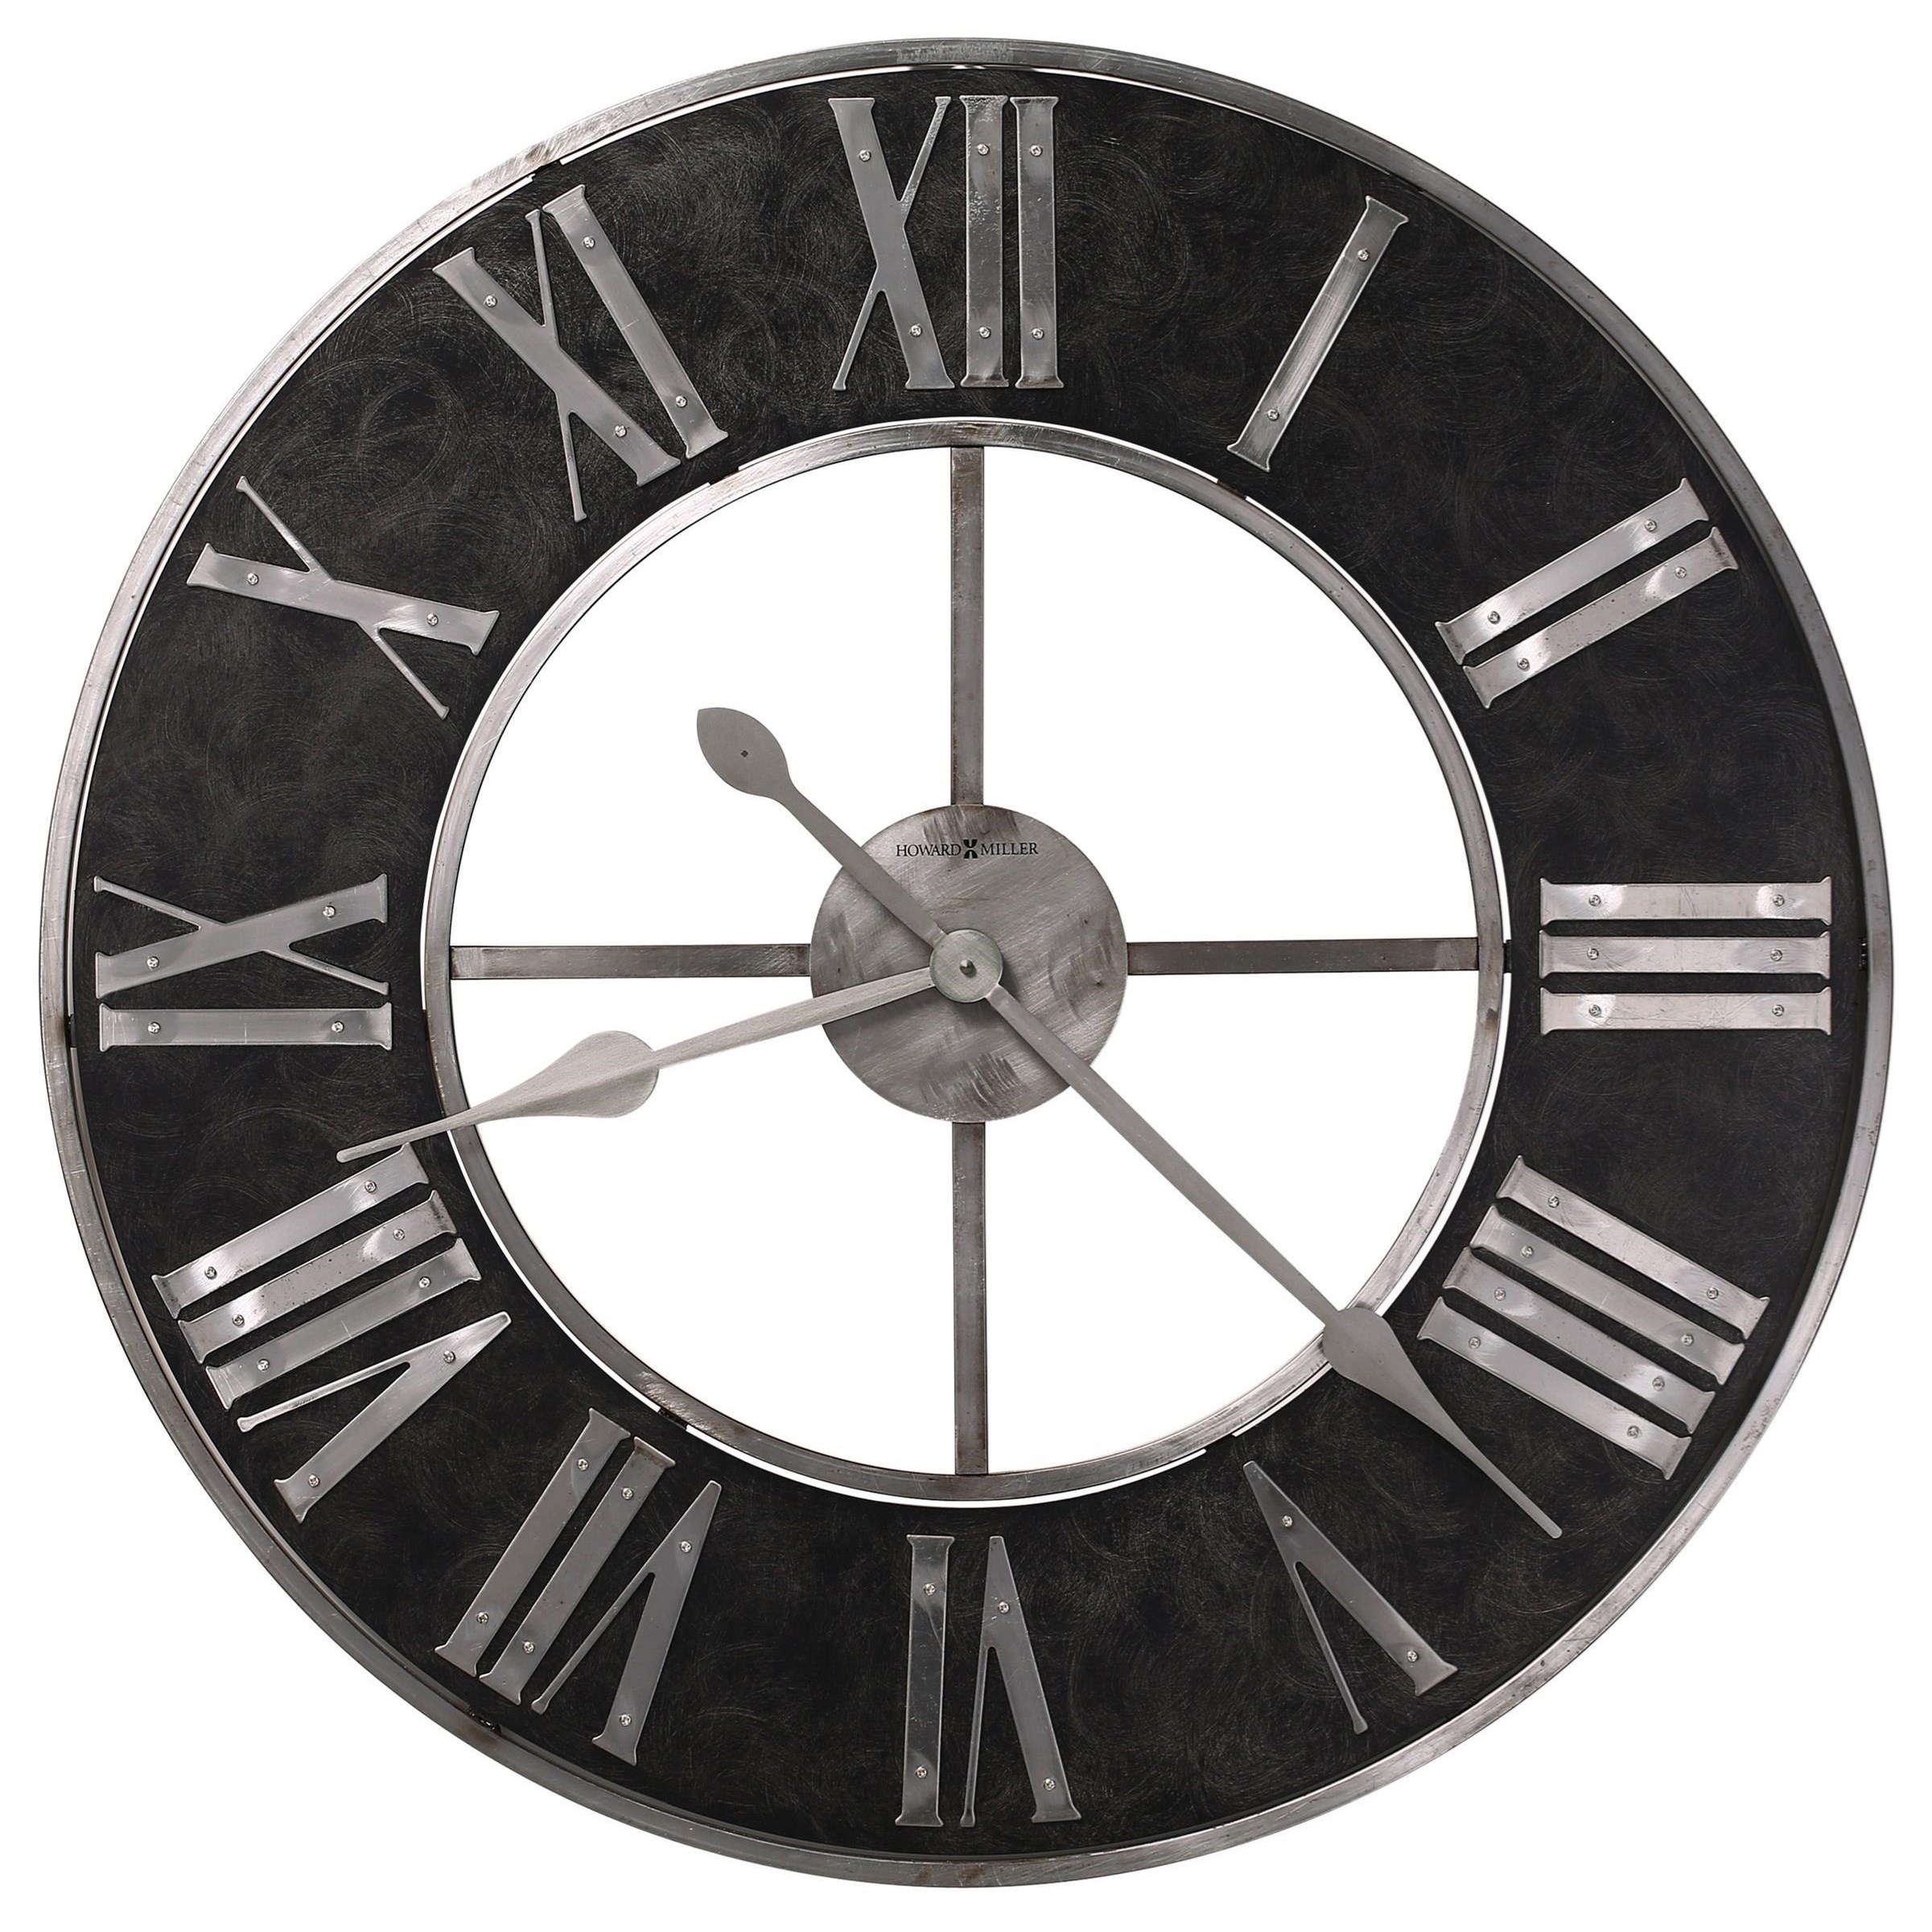 Dearborn Wall Clock